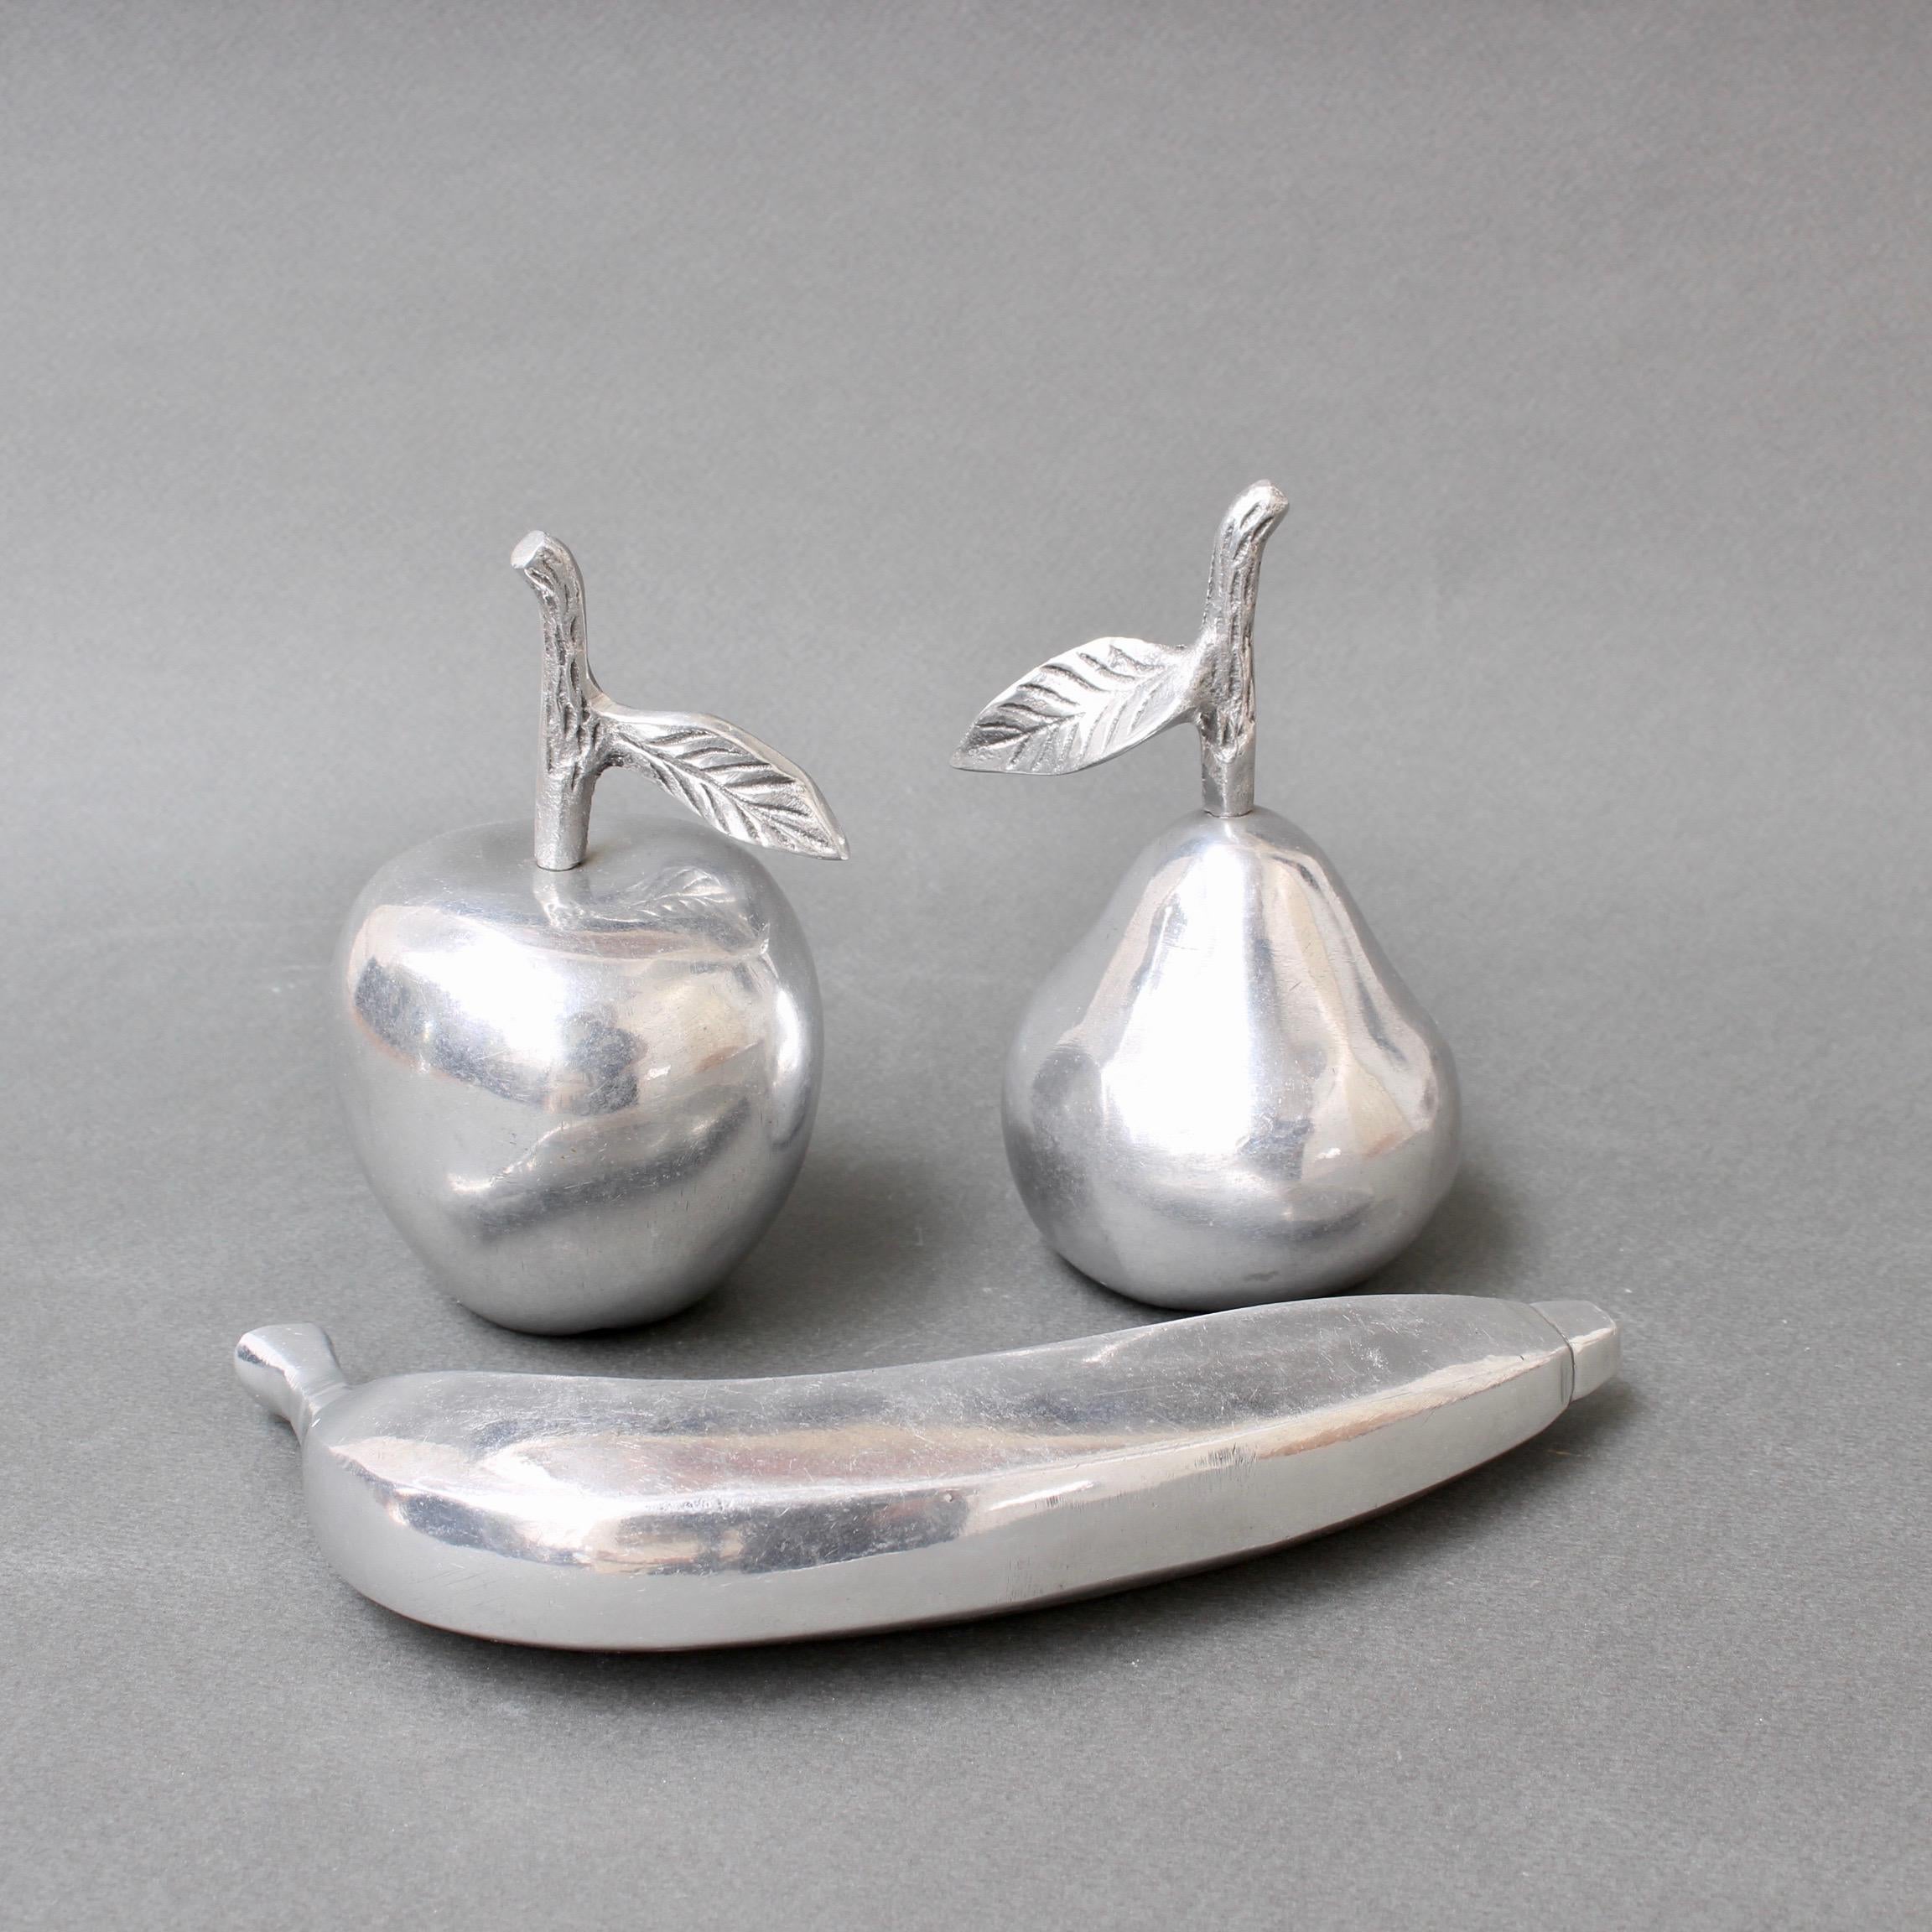 aluminium decorative items